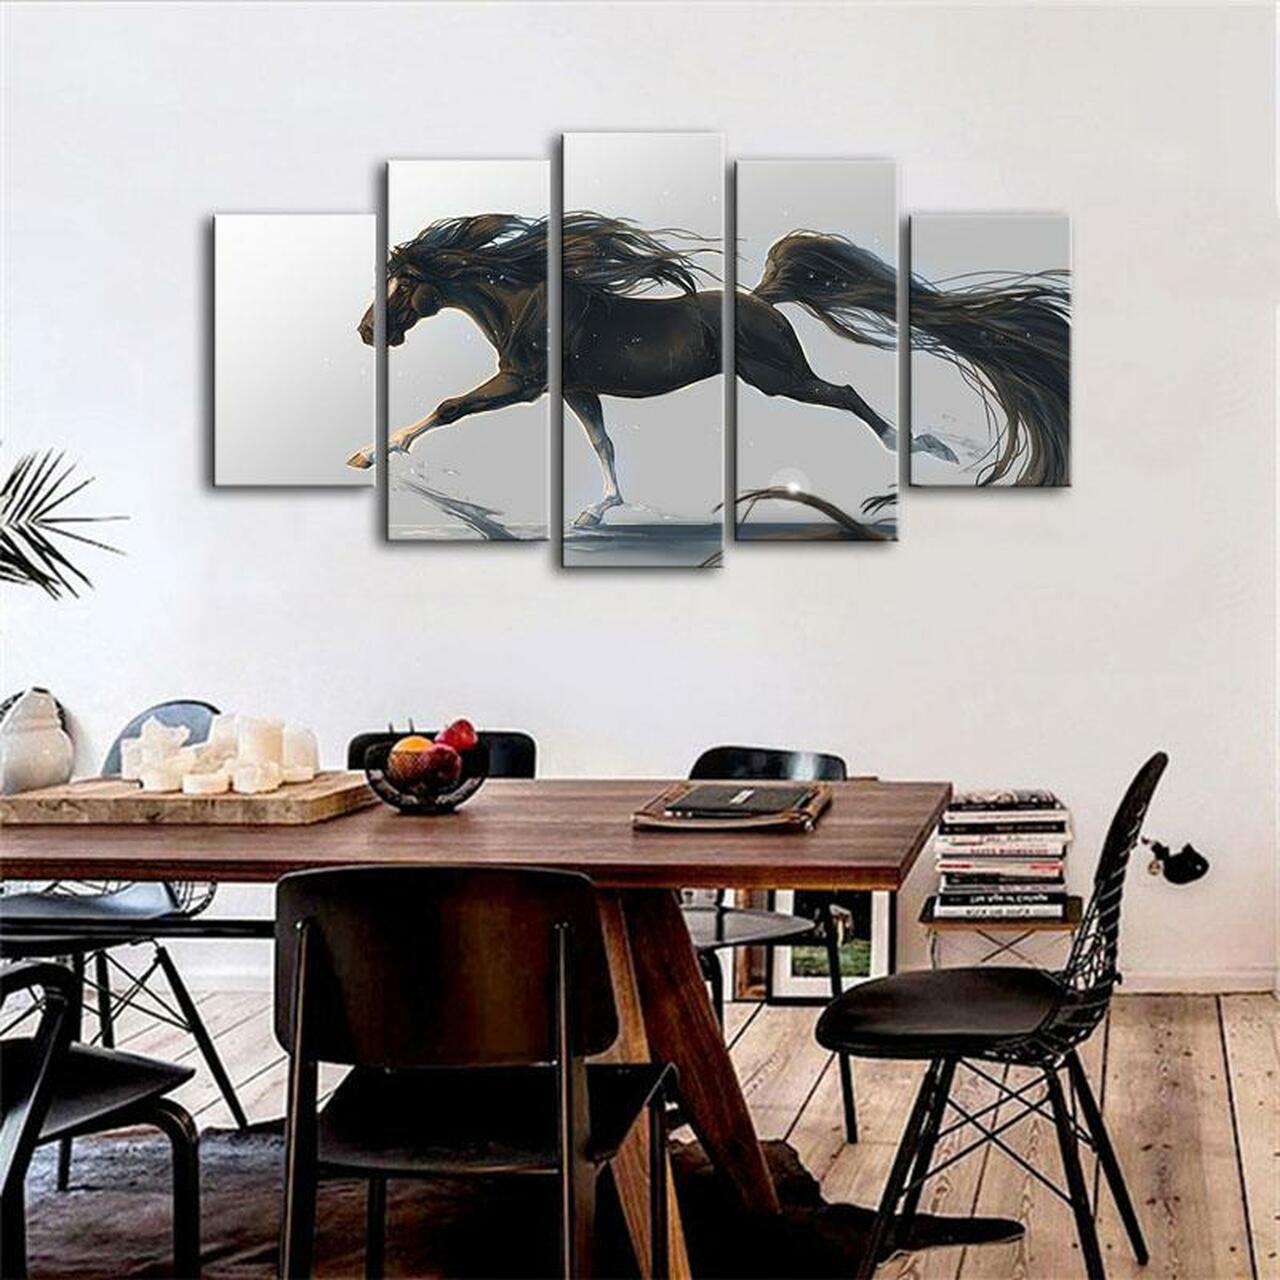 black stallion horse 5 pices peinture sur toile impression sur toile toile art pour la dcoration